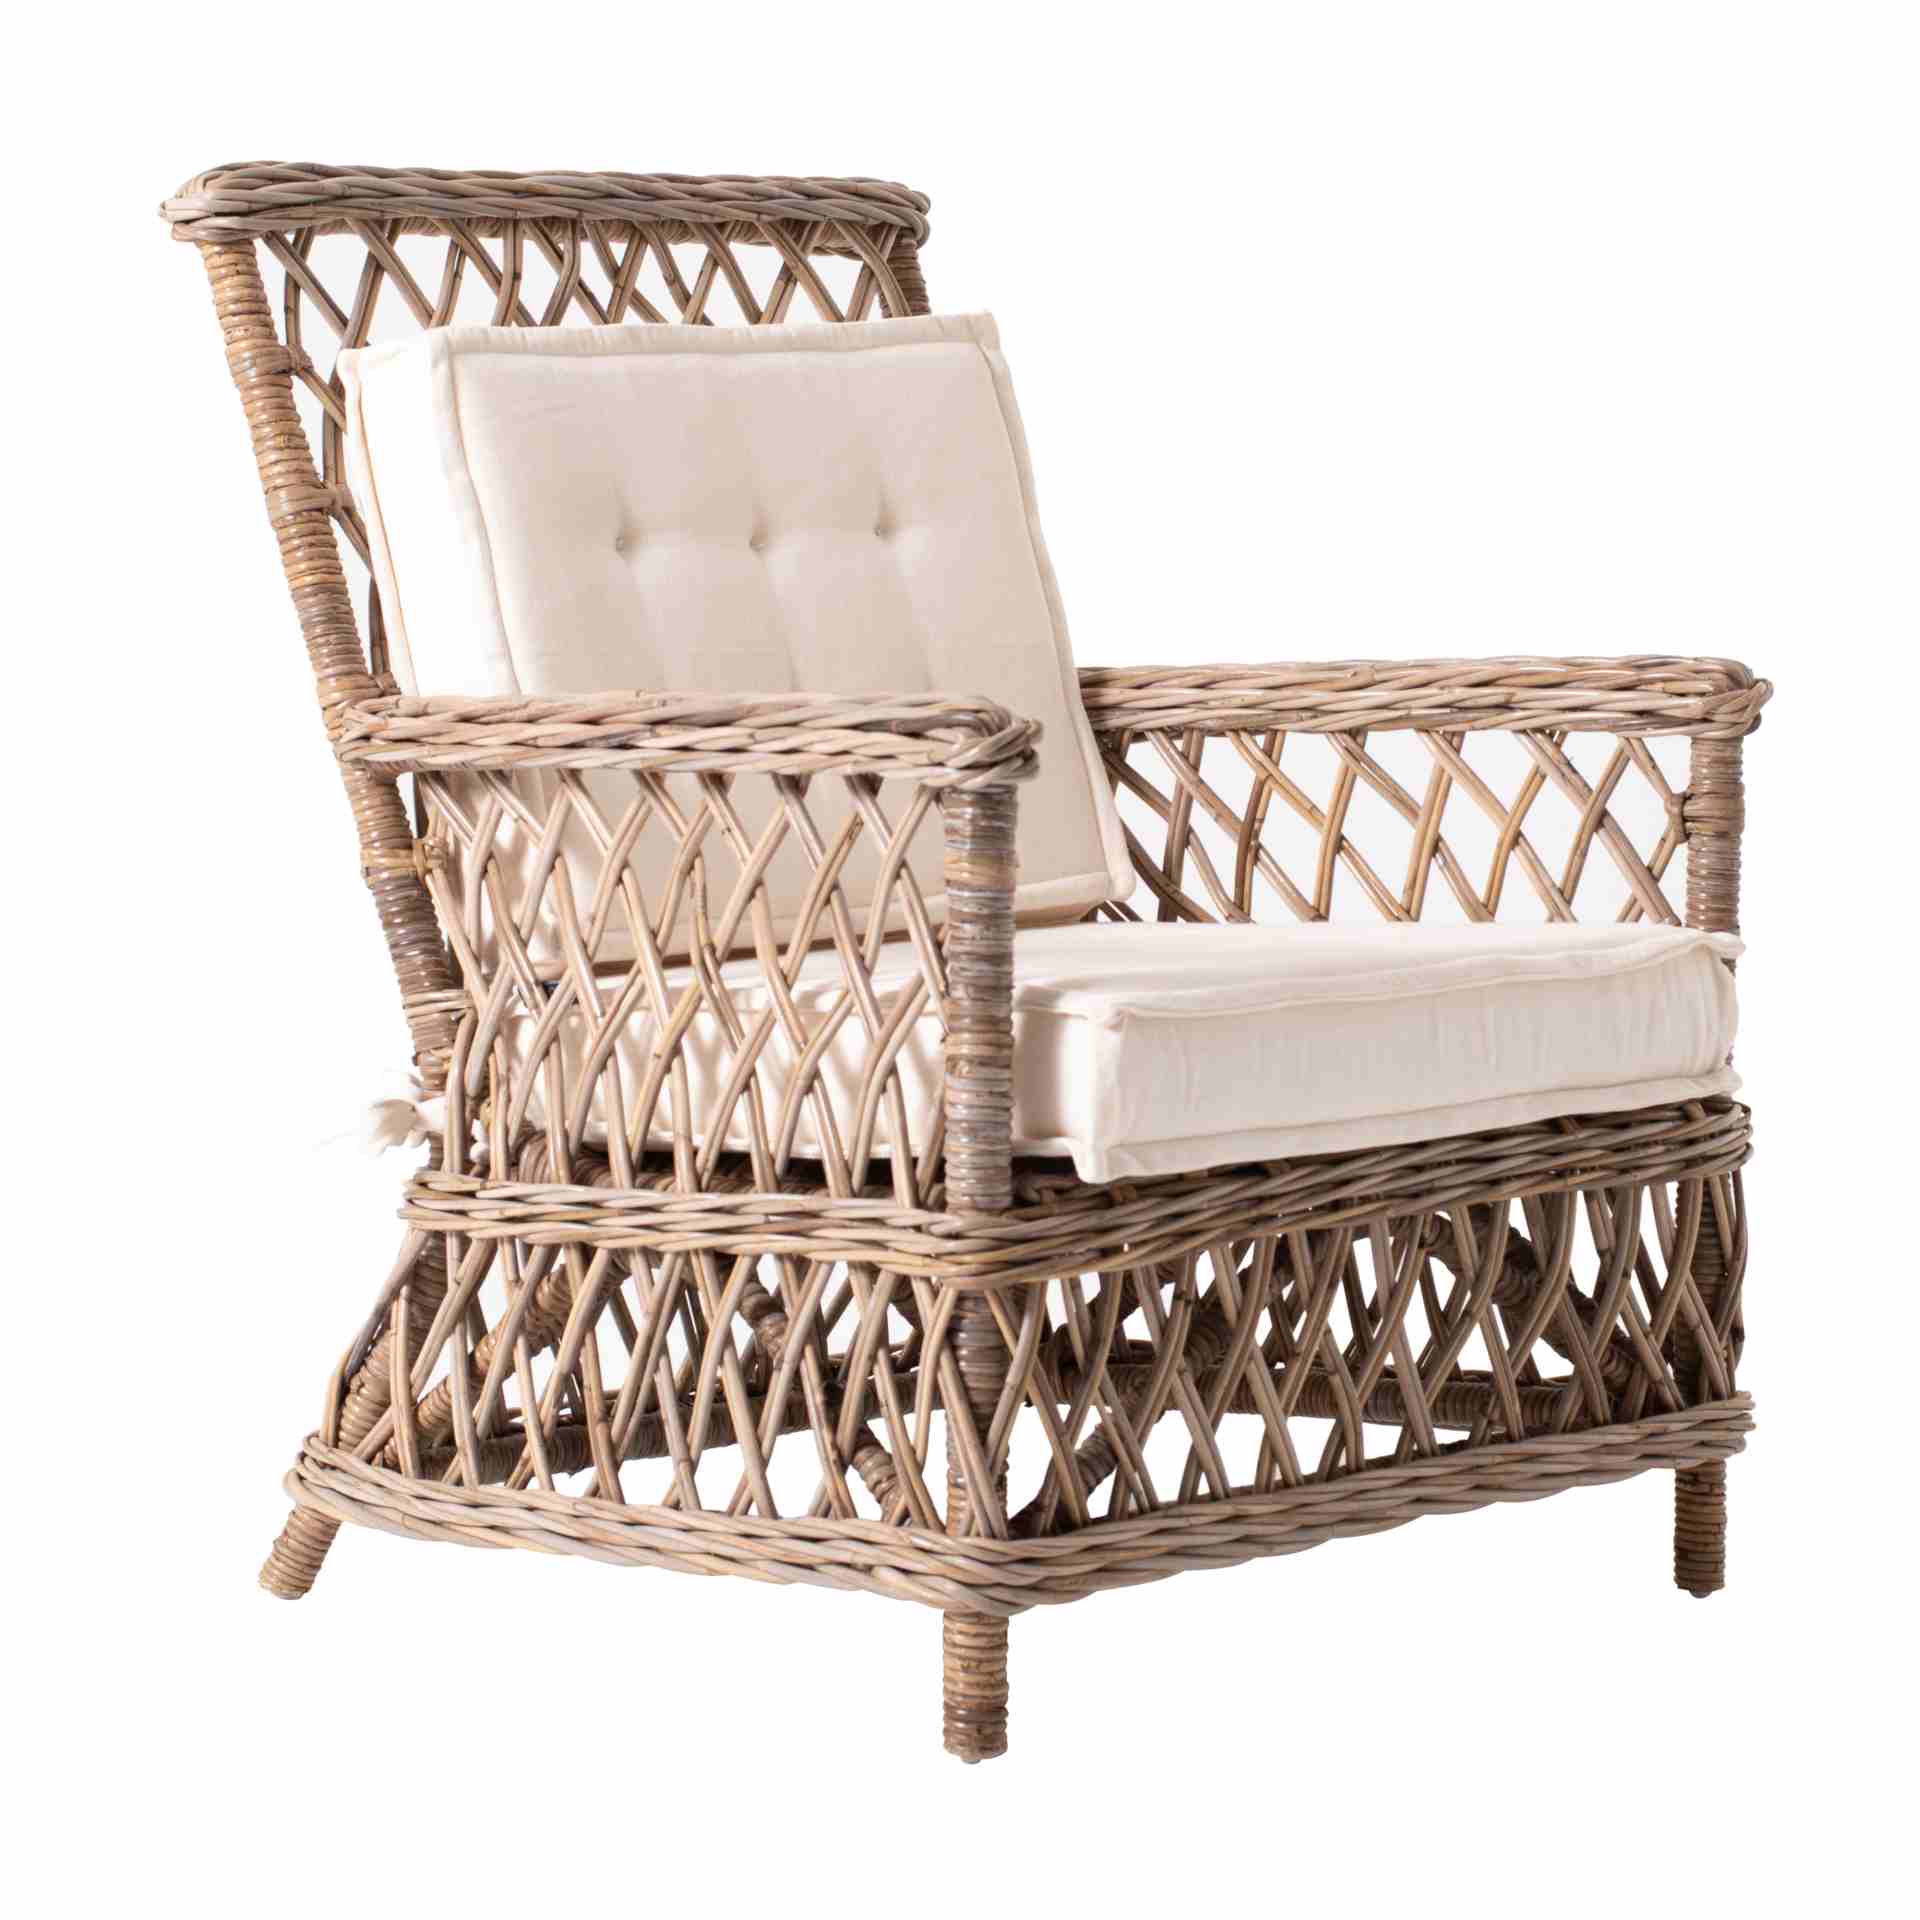 Der Armlehnstuhl Marquis überzeugt mit seinem Landhaus Stil. Gefertigt wurde er aus Kabu Rattan, welches einen braunen Farbton besitzt. Der Stuhl verfügt über eine Armlehne und ist im 2er-Set erhältlich. Die Sitzhöhe beträgt beträgt 34 cm.